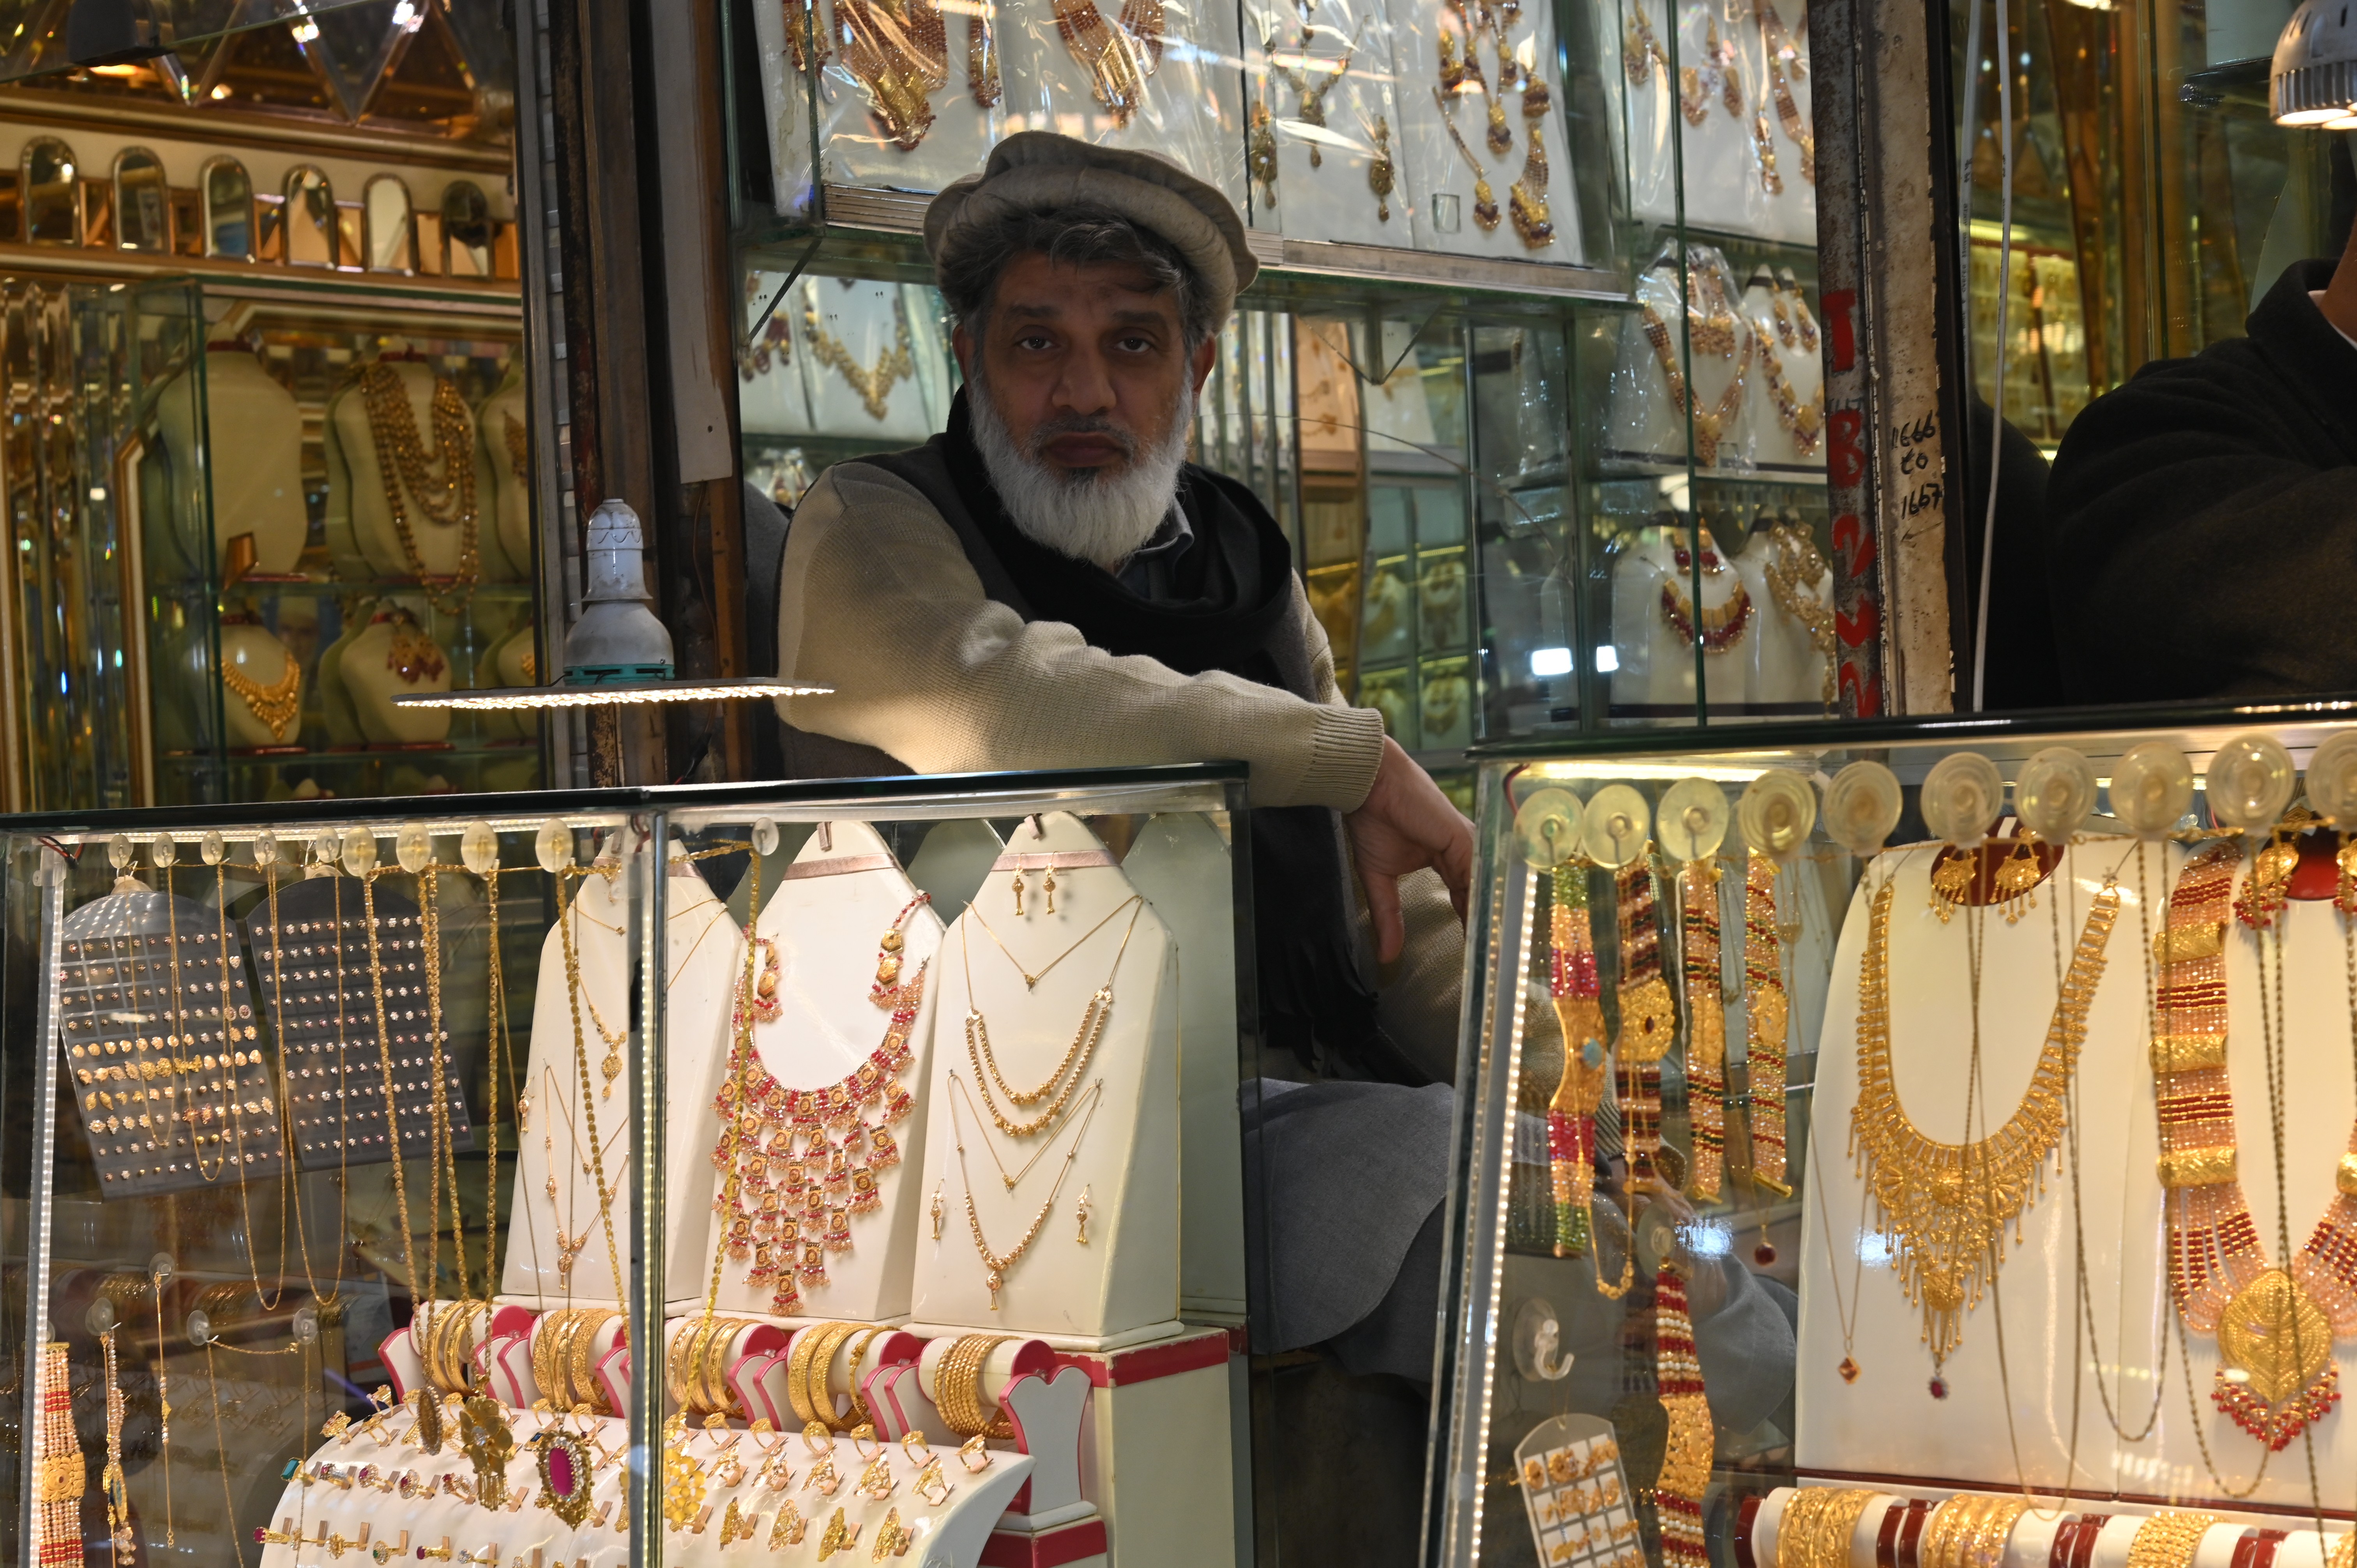 A jewellery shop in Peshawar market